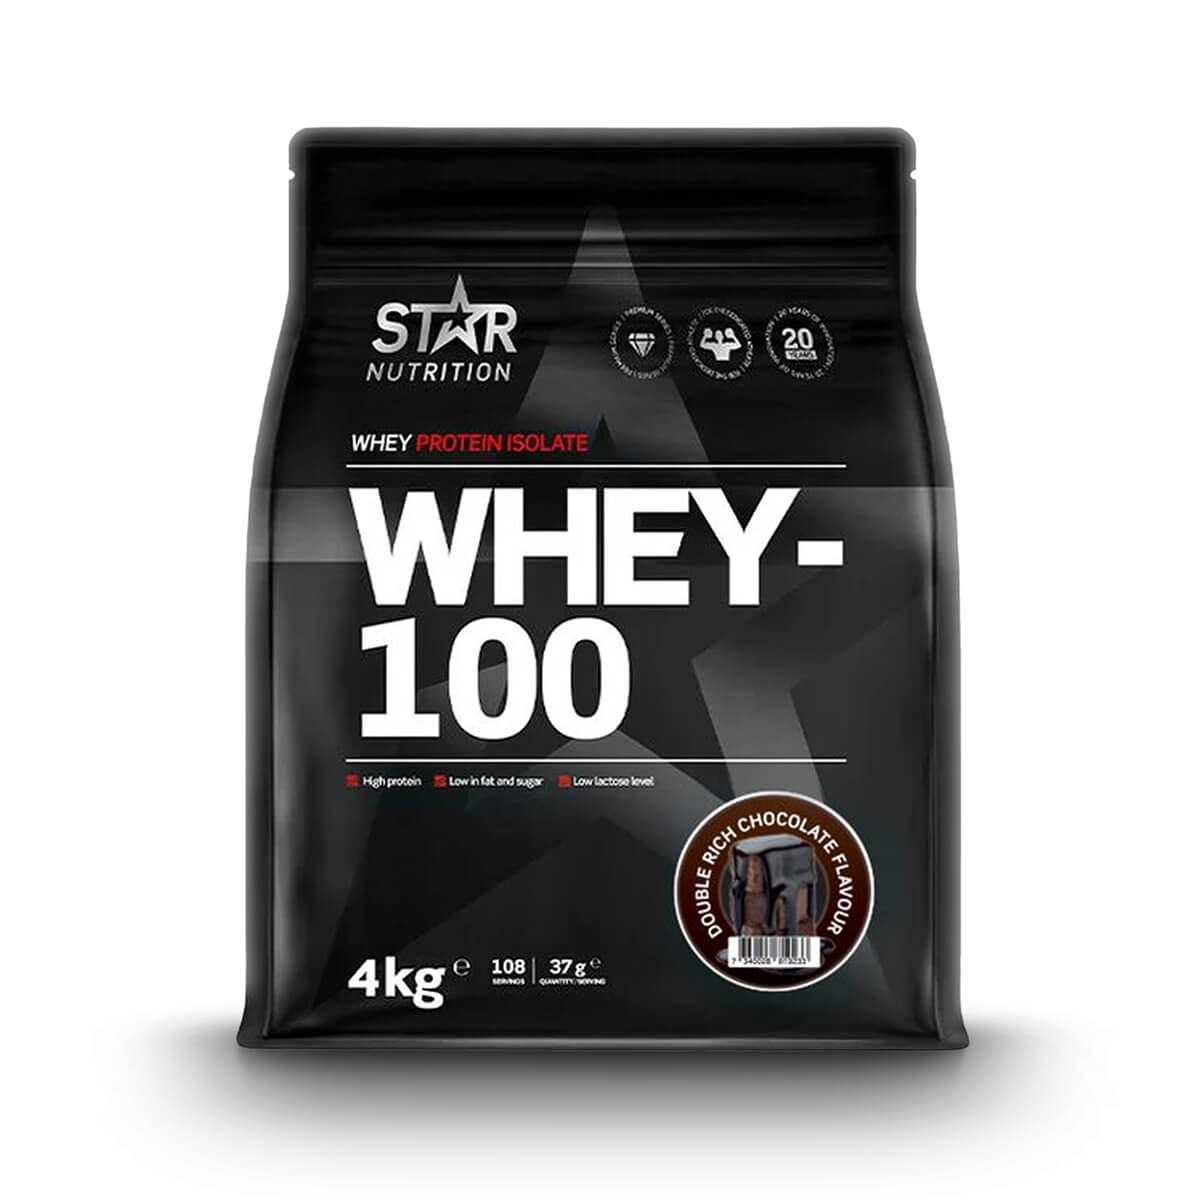 Whey-100, 4 kg, Star Nutrition